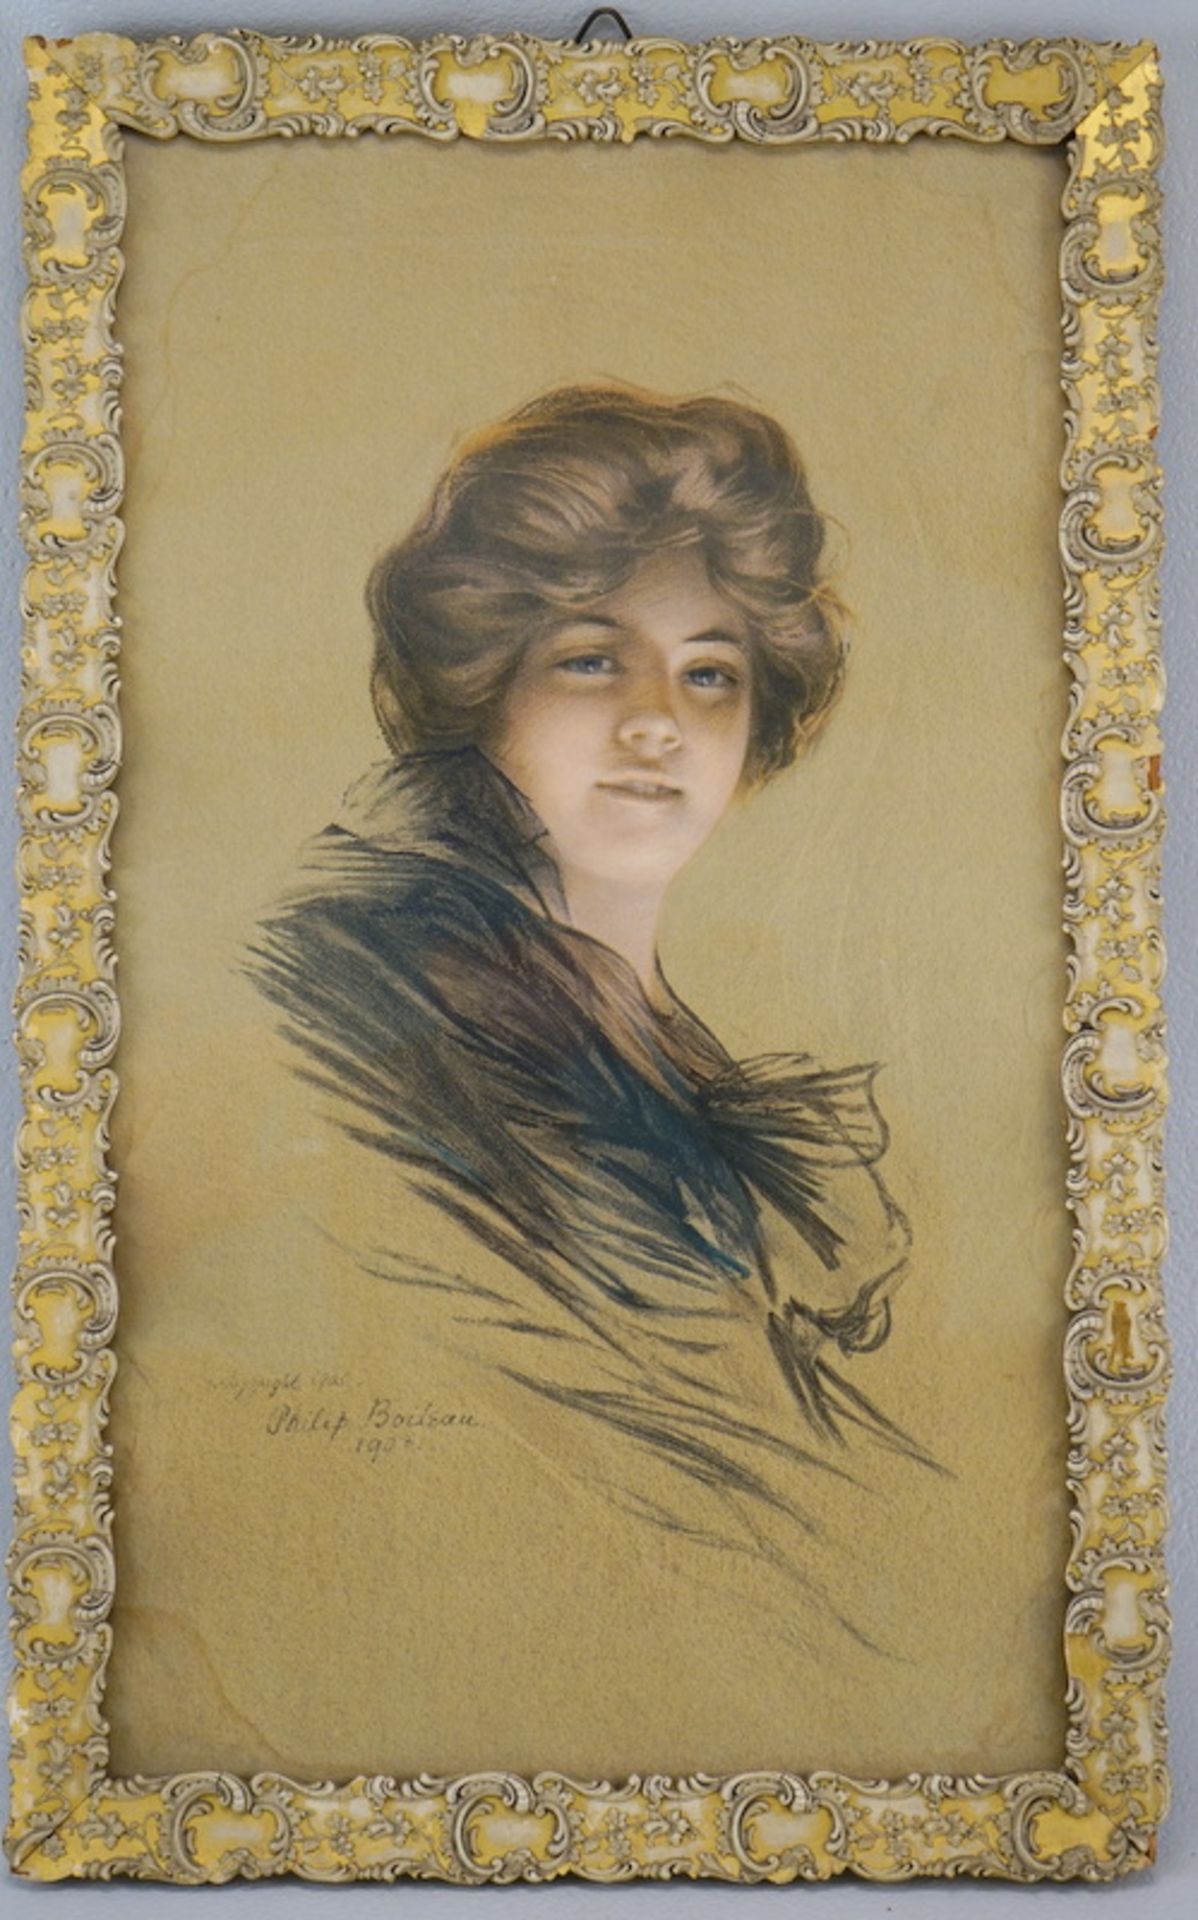 Philip Boileau: Philip Boileau, Bildnis einer jungen Dame, Lithografie, 1905/07 - Image 2 of 3